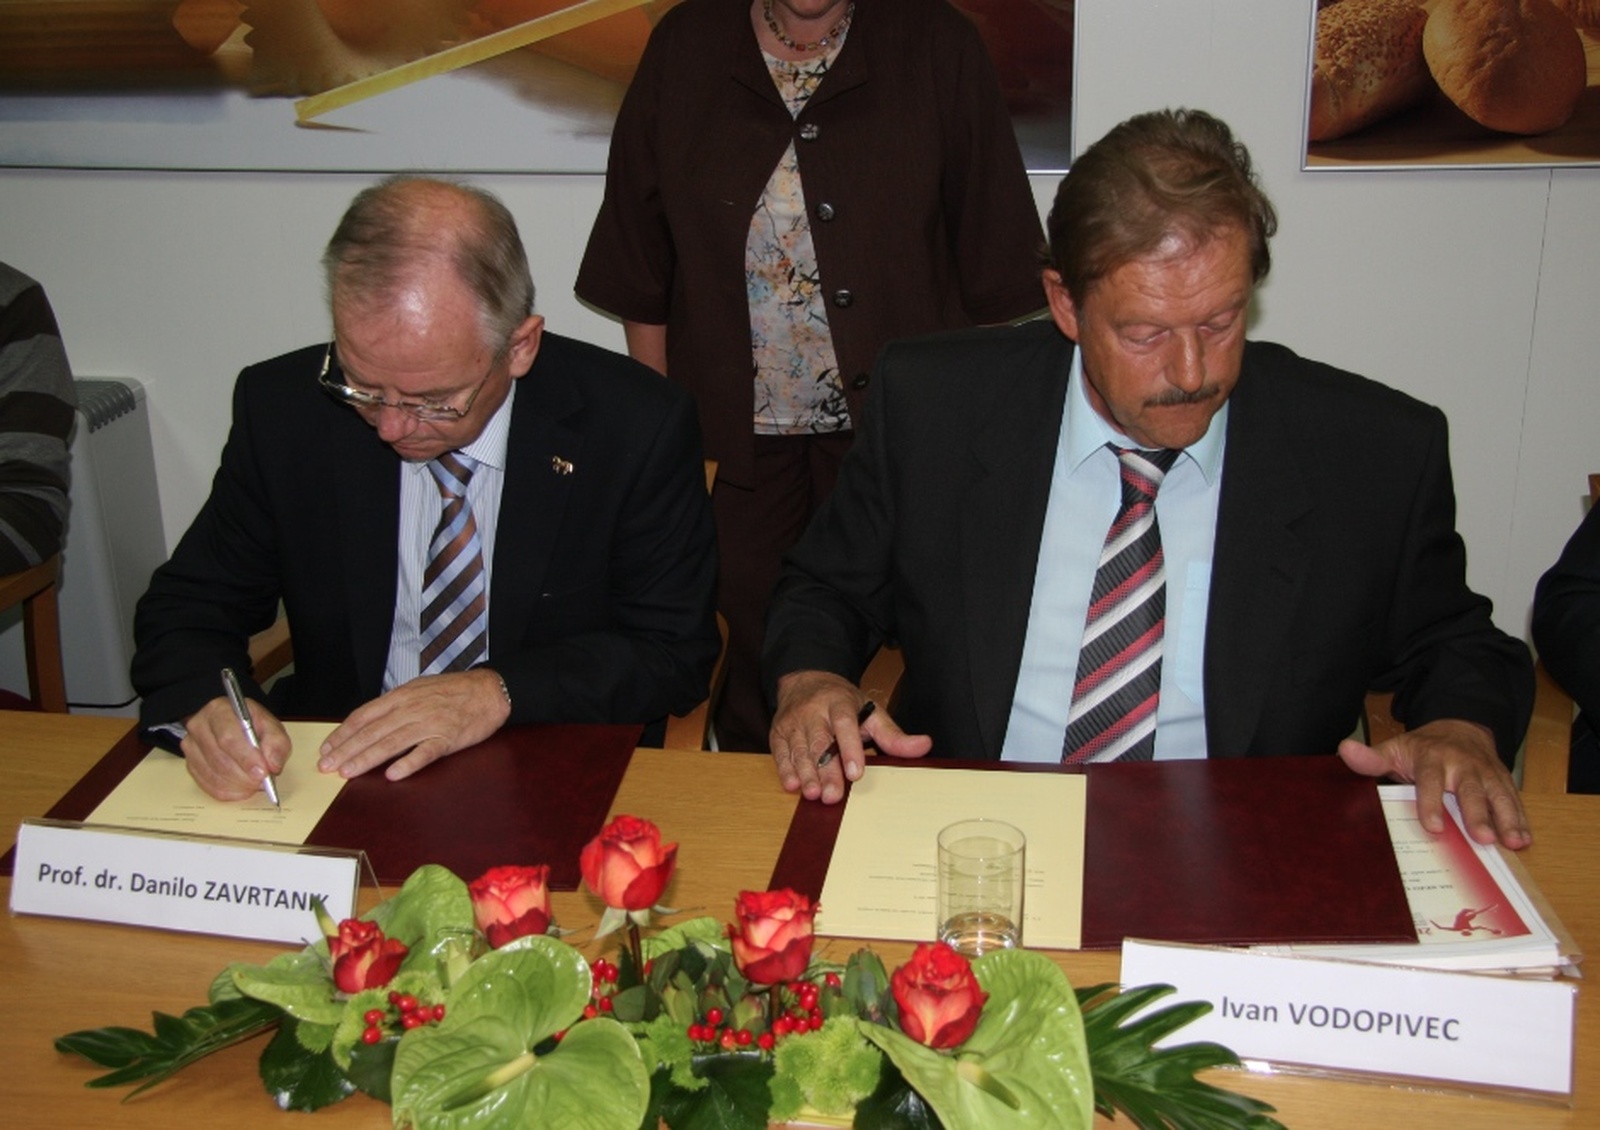 ŽRK Mlinotest Ajdovščina and the University of Nova Gorica Signed an Agreement on Collaboration